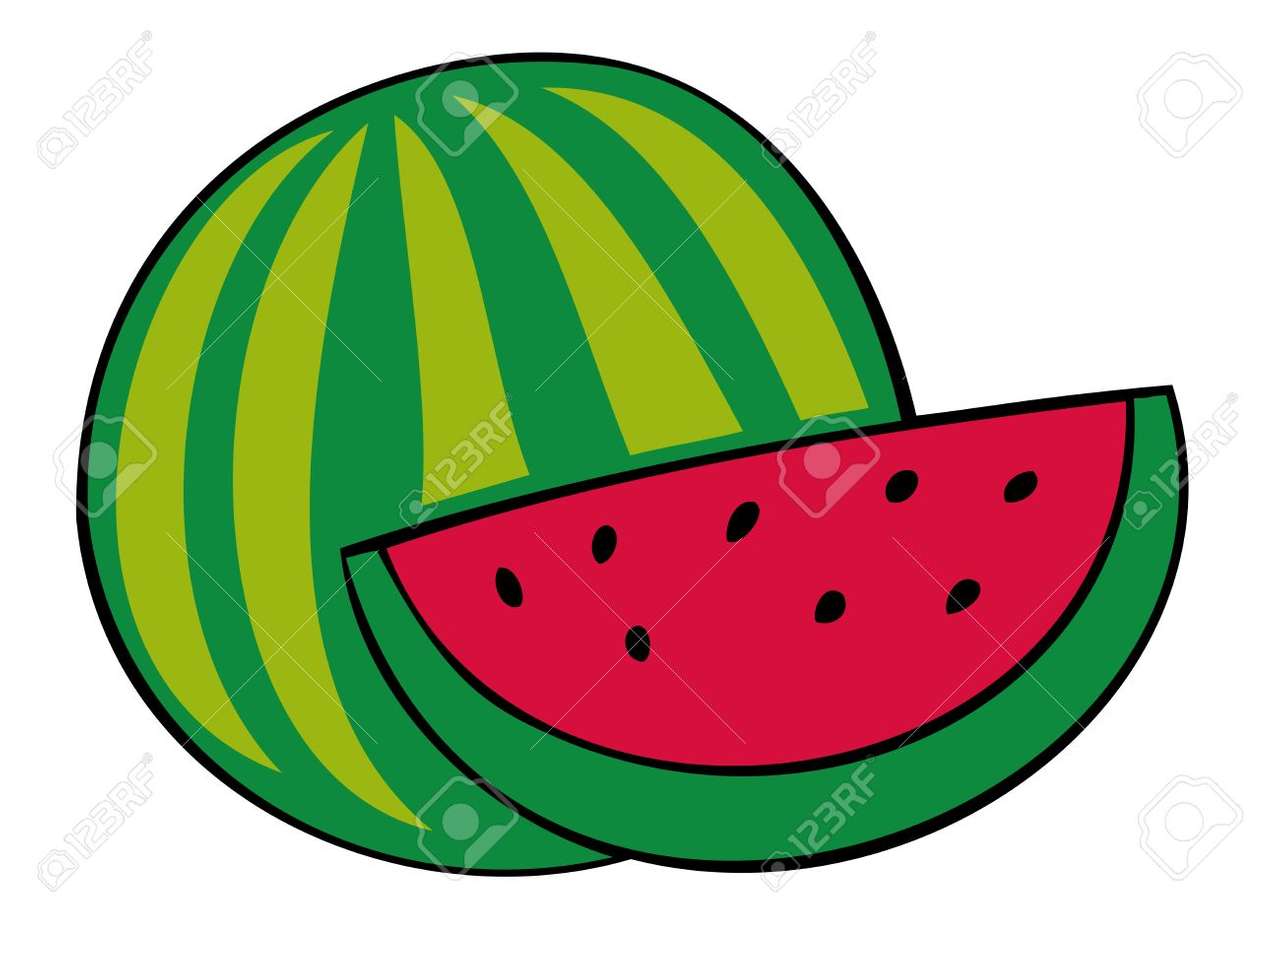 watermeloen letter S. legpuzzel online